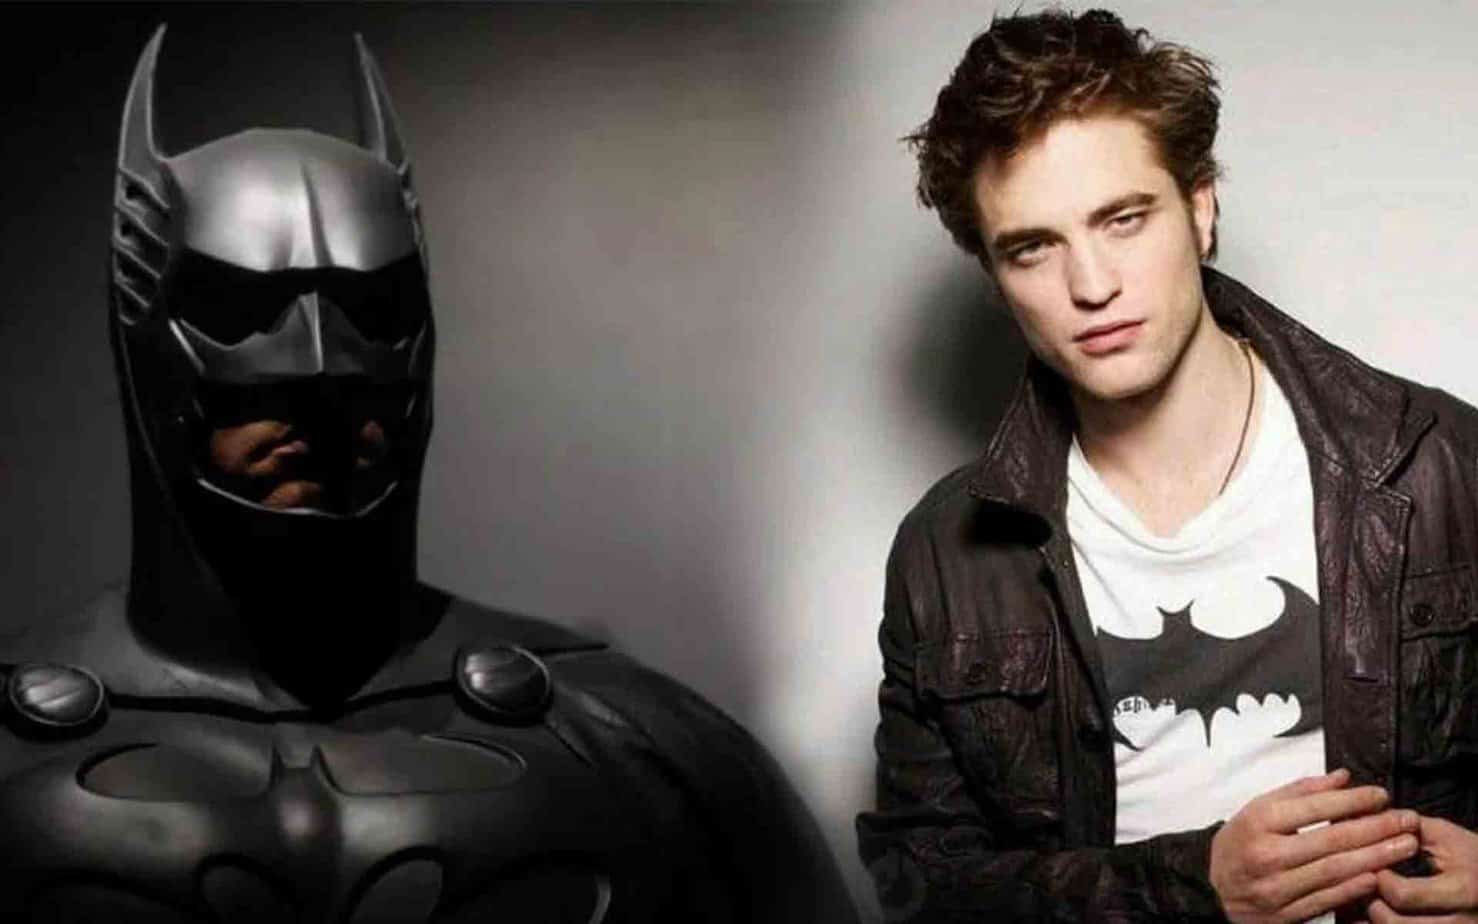 Robert Pattinson Batman - New image Gives Fans a Better Look at Batsuit